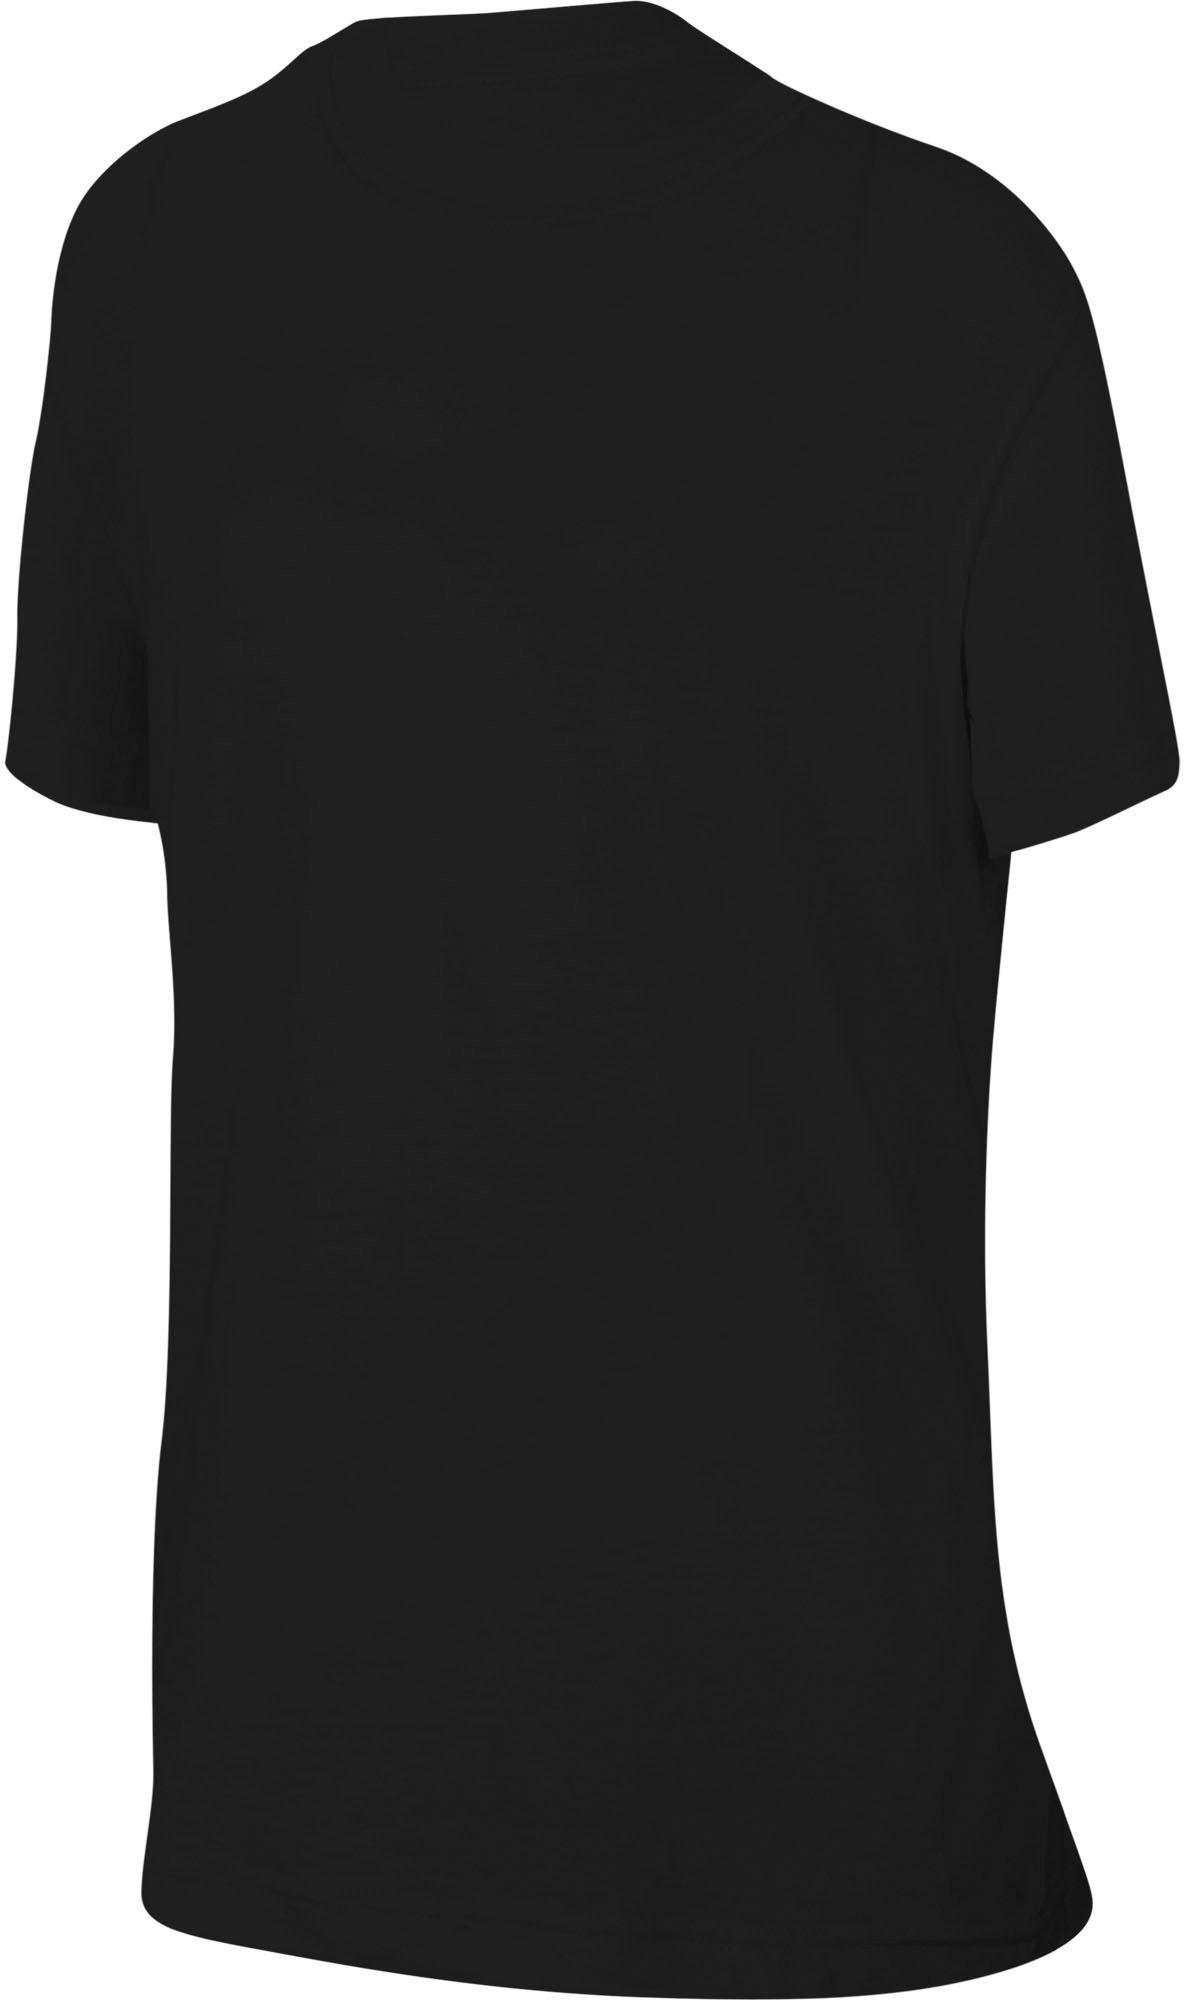 Nike (Girls) T-Shirt Kids' schwarz Sportswear Big T-Shirt